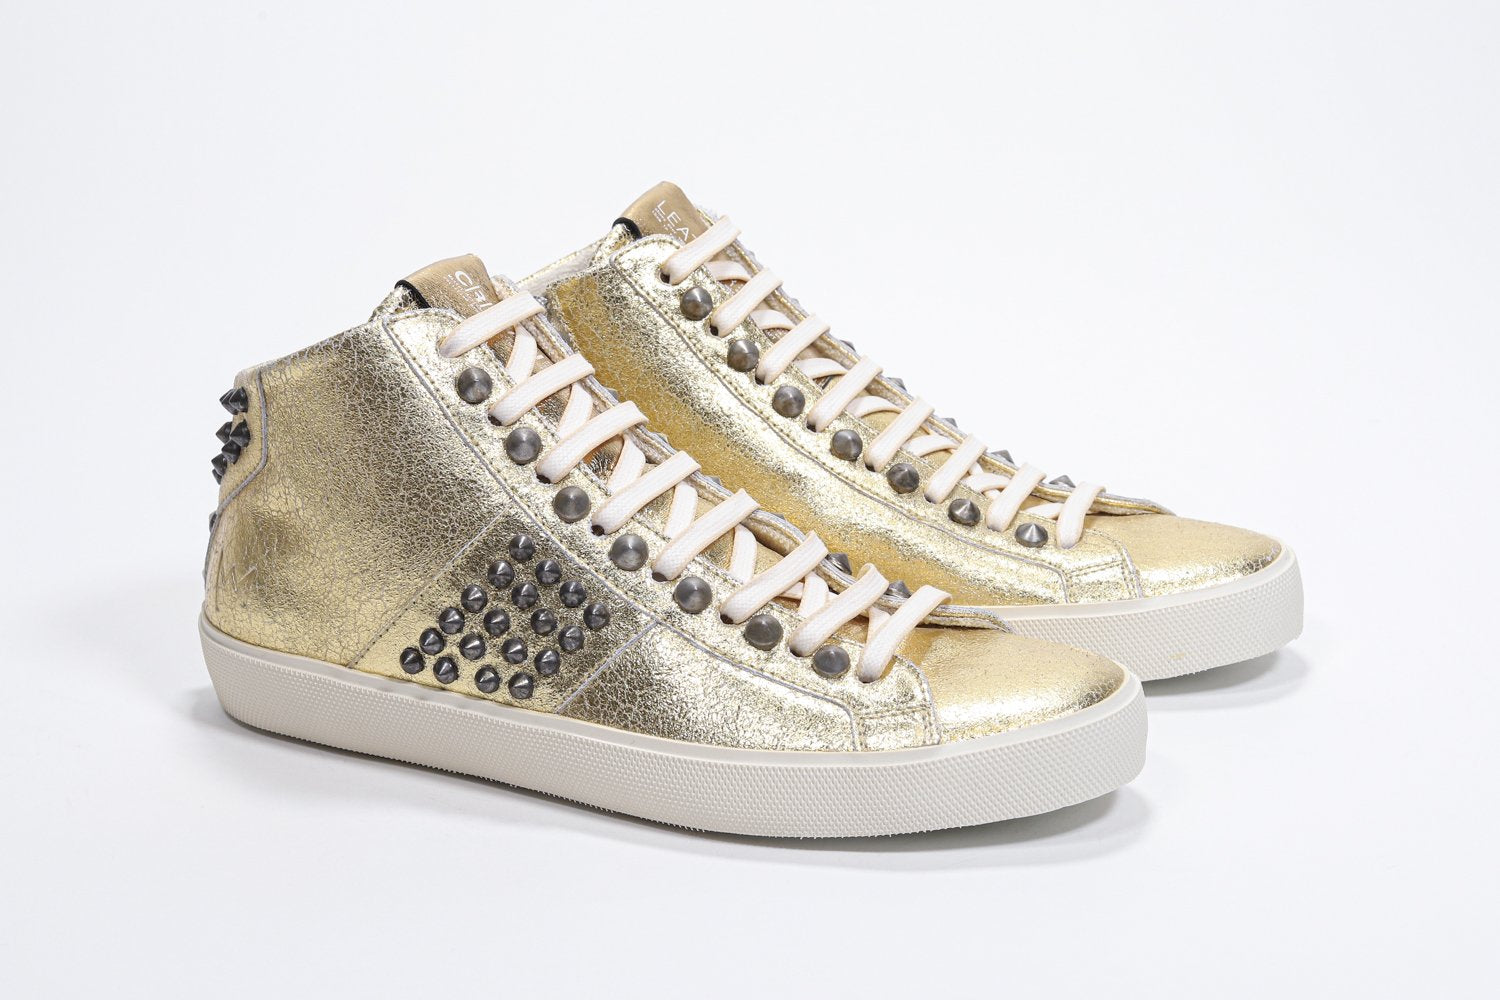 Tre quarti di vista frontale del modello mid top in oro metallizzato sneaker. Tomaia in pelle con borchie, zip interna e suola in gomma vintage.